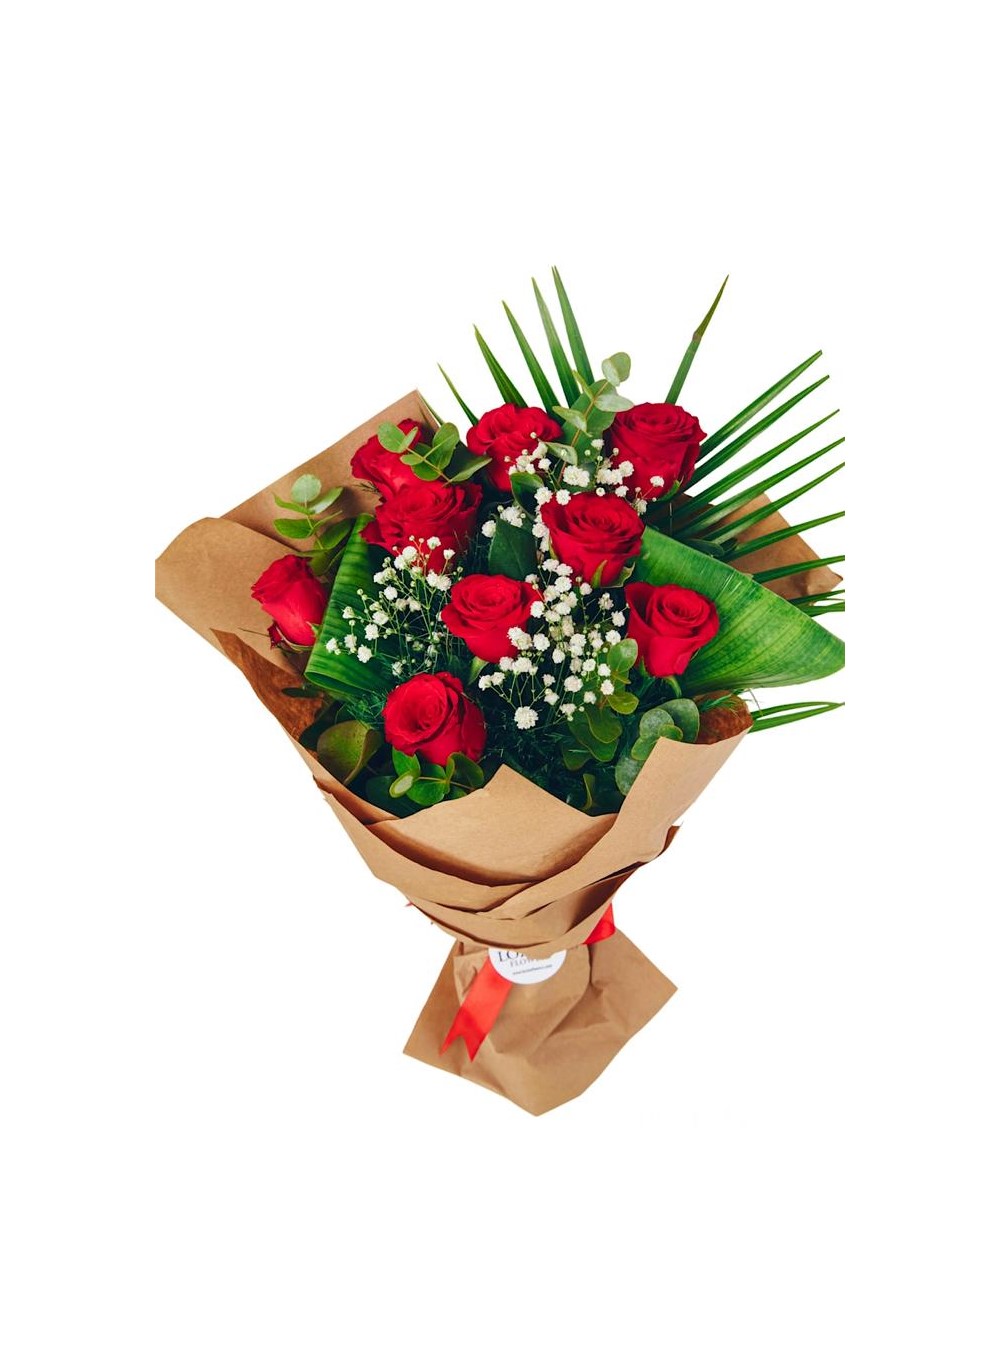 9 Premium Red Roses in Love